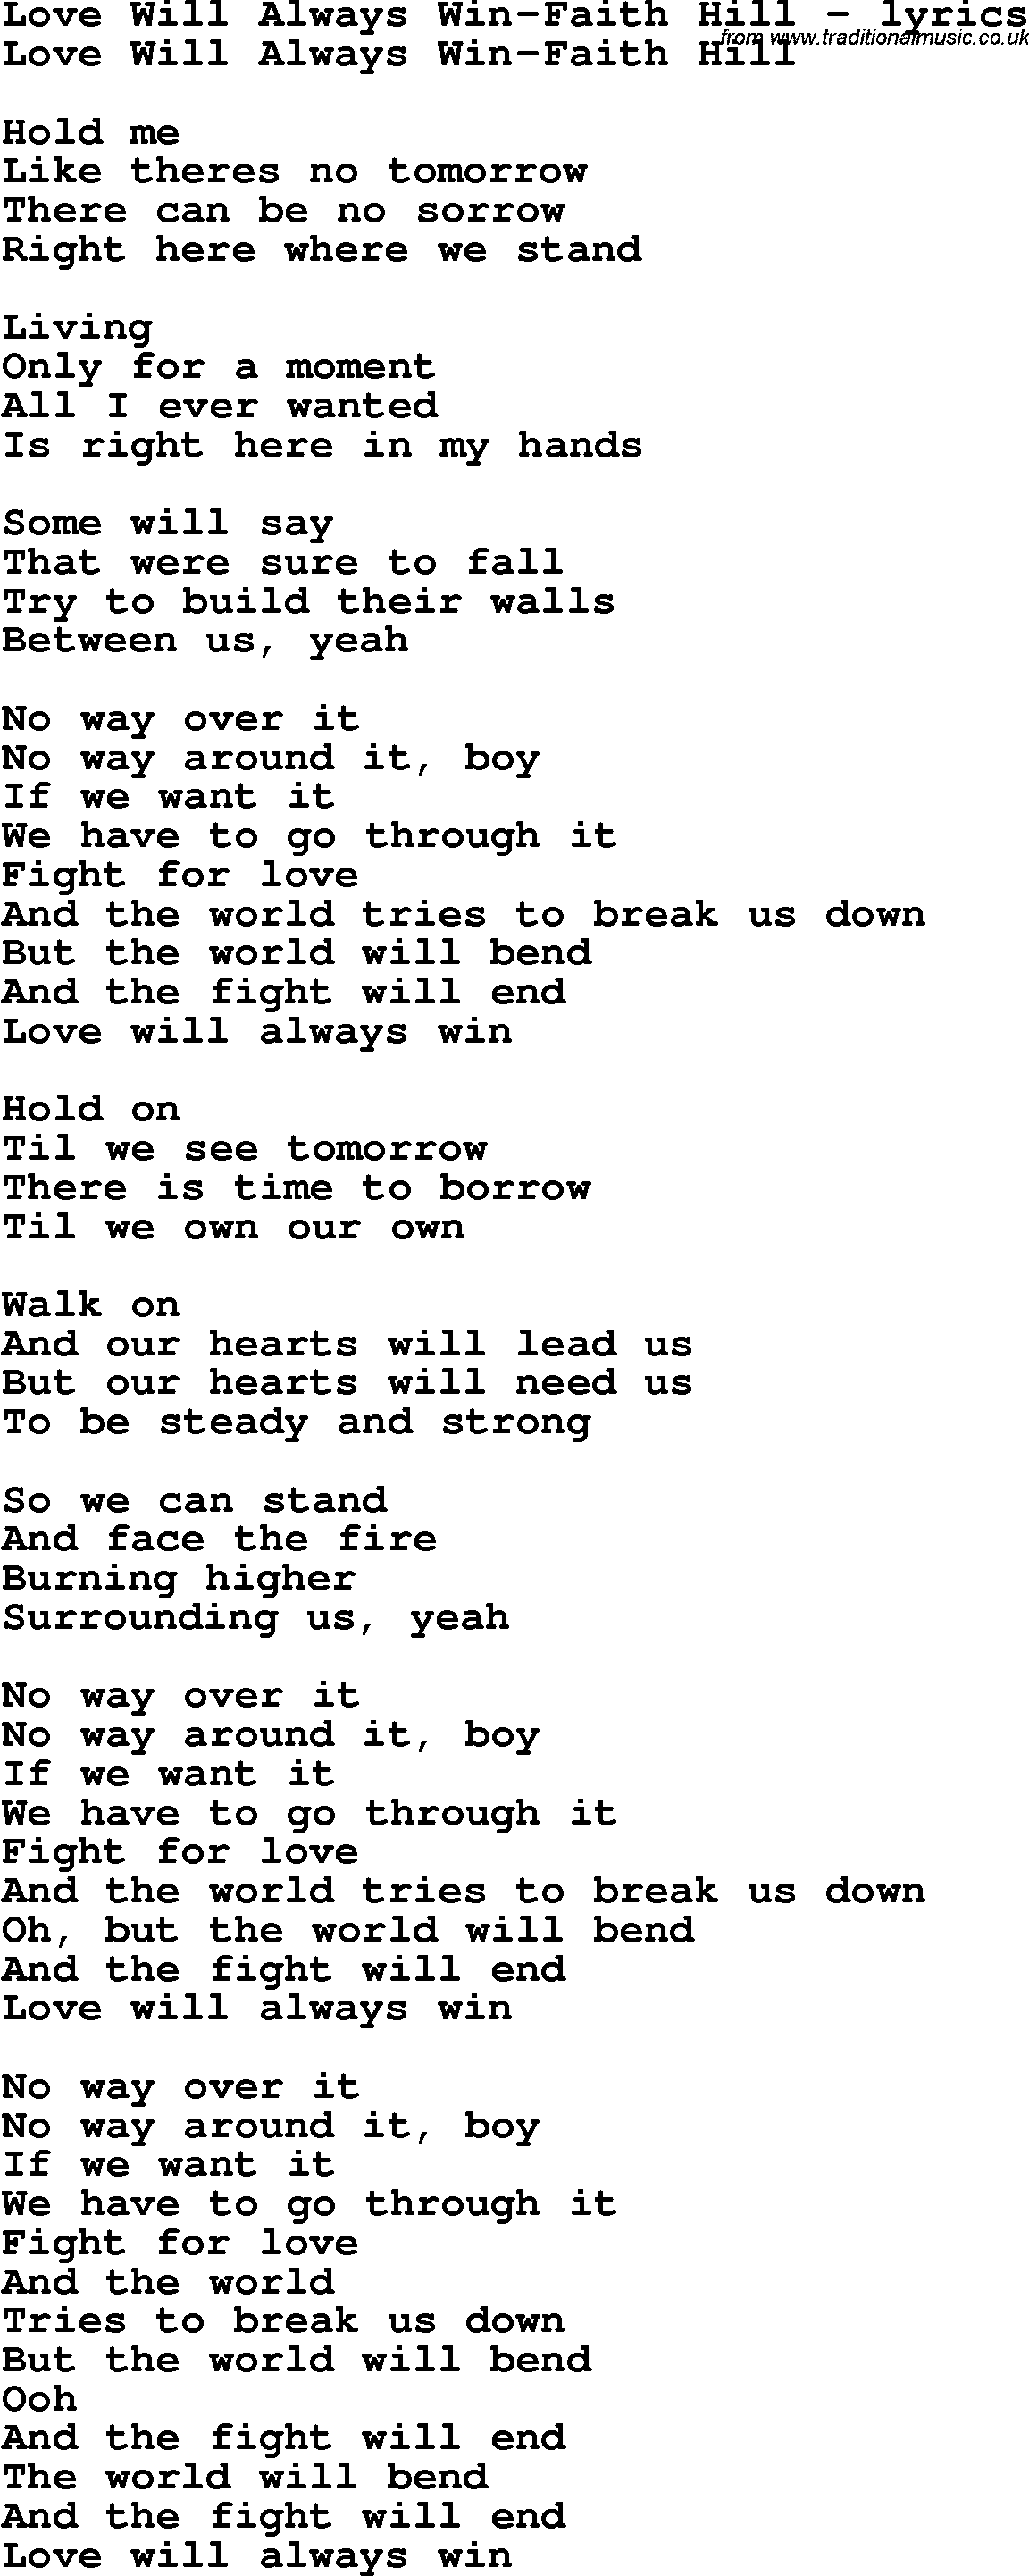 Love Song Lyrics for: Love Will Always Win-Faith Hill